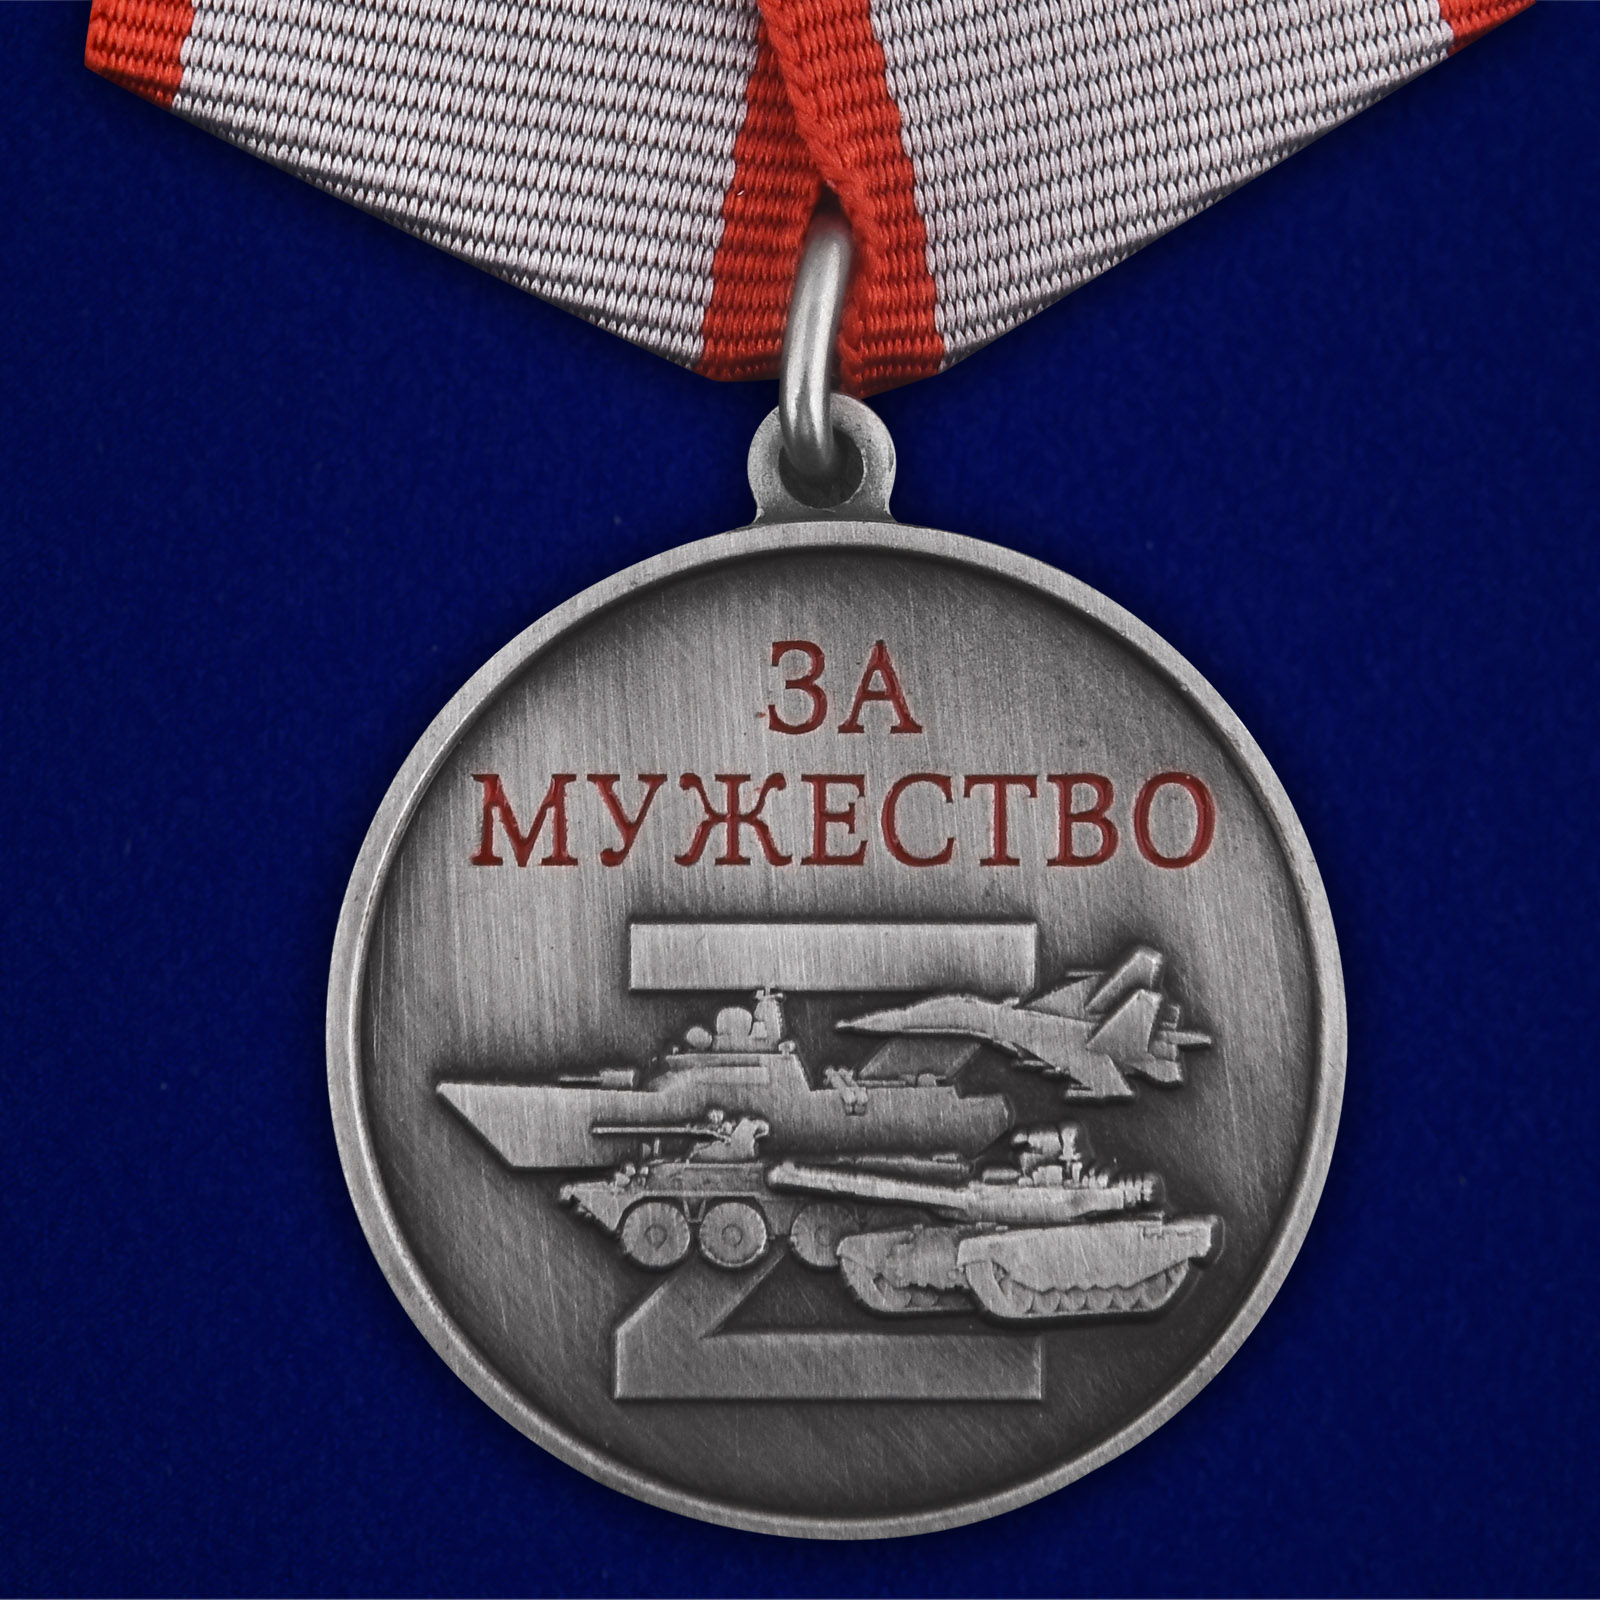 Купить медаль За мужество участнику СВО онлайн